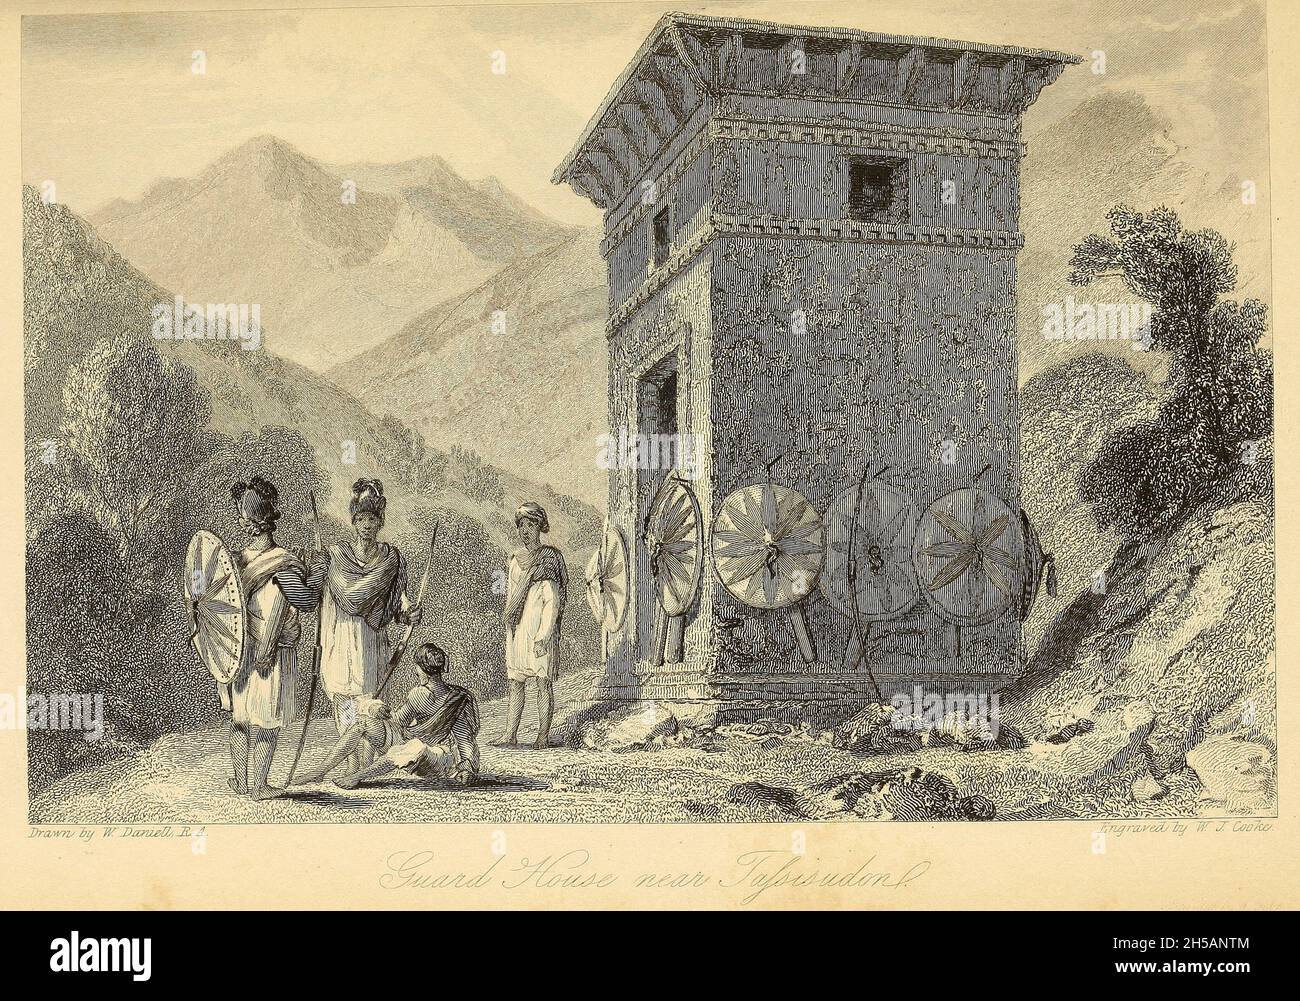 Garde-maison à Tassisudon [Tashichho Dzong est un monastère bouddhiste et une forteresse à la limite nord de la ville de Thimphu au Bhoutan].D'après le livre « The Oriental Annual, or, Scenes in India » du rév. Hobart Caunter publié par Edward Bull, Londres 1838 gravures de dessins de William Daniell Banque D'Images